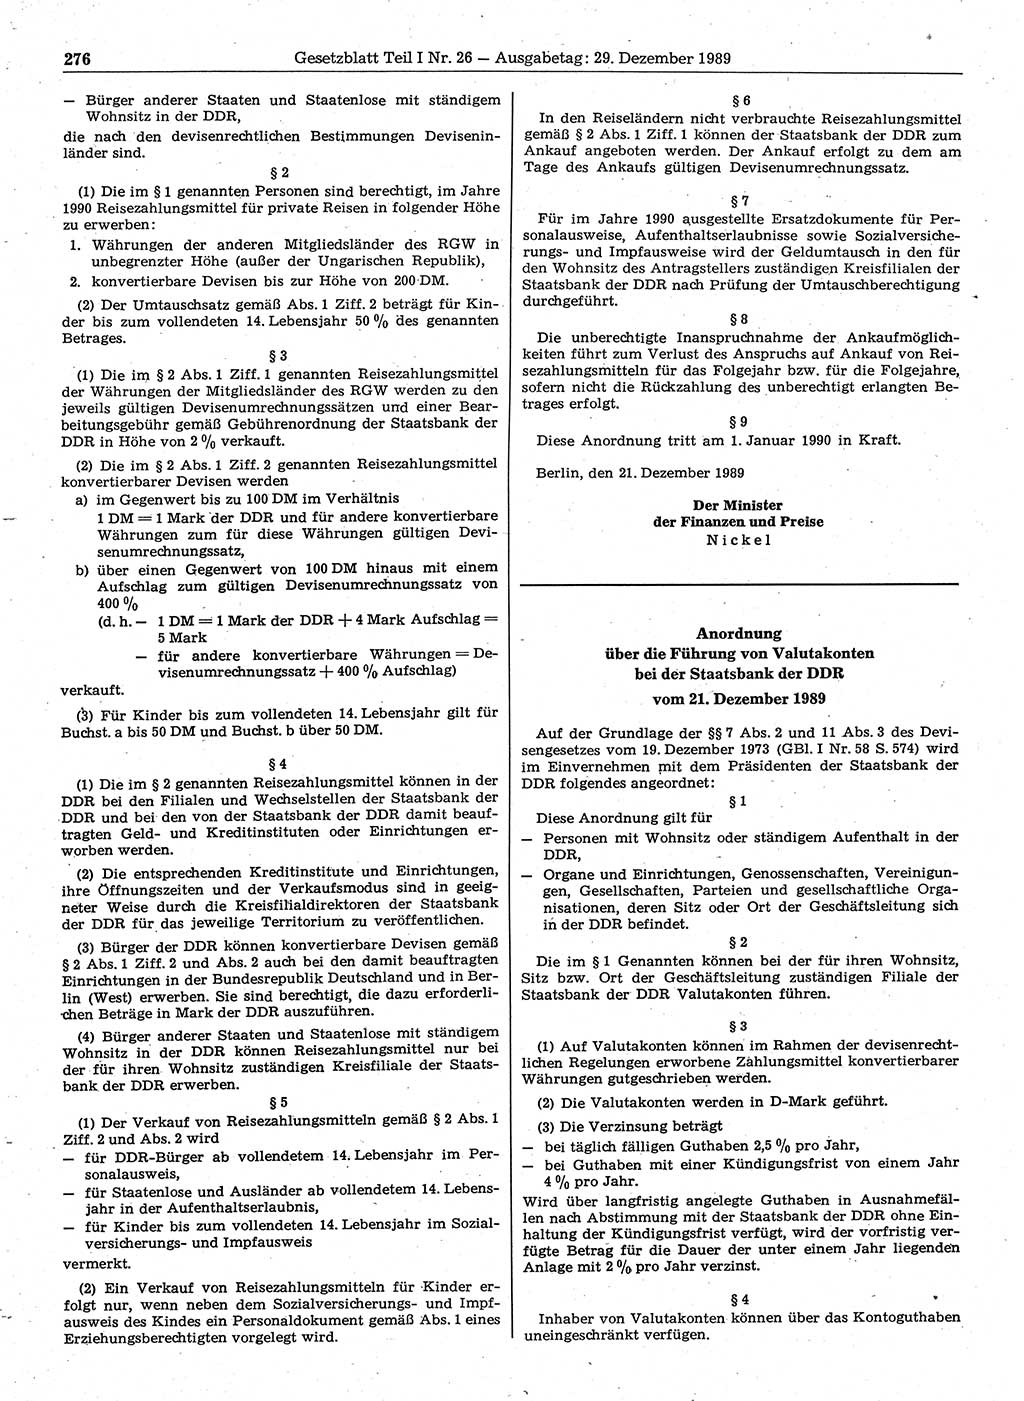 Gesetzblatt (GBl.) der Deutschen Demokratischen Republik (DDR) Teil Ⅰ 1989, Seite 276 (GBl. DDR Ⅰ 1989, S. 276)